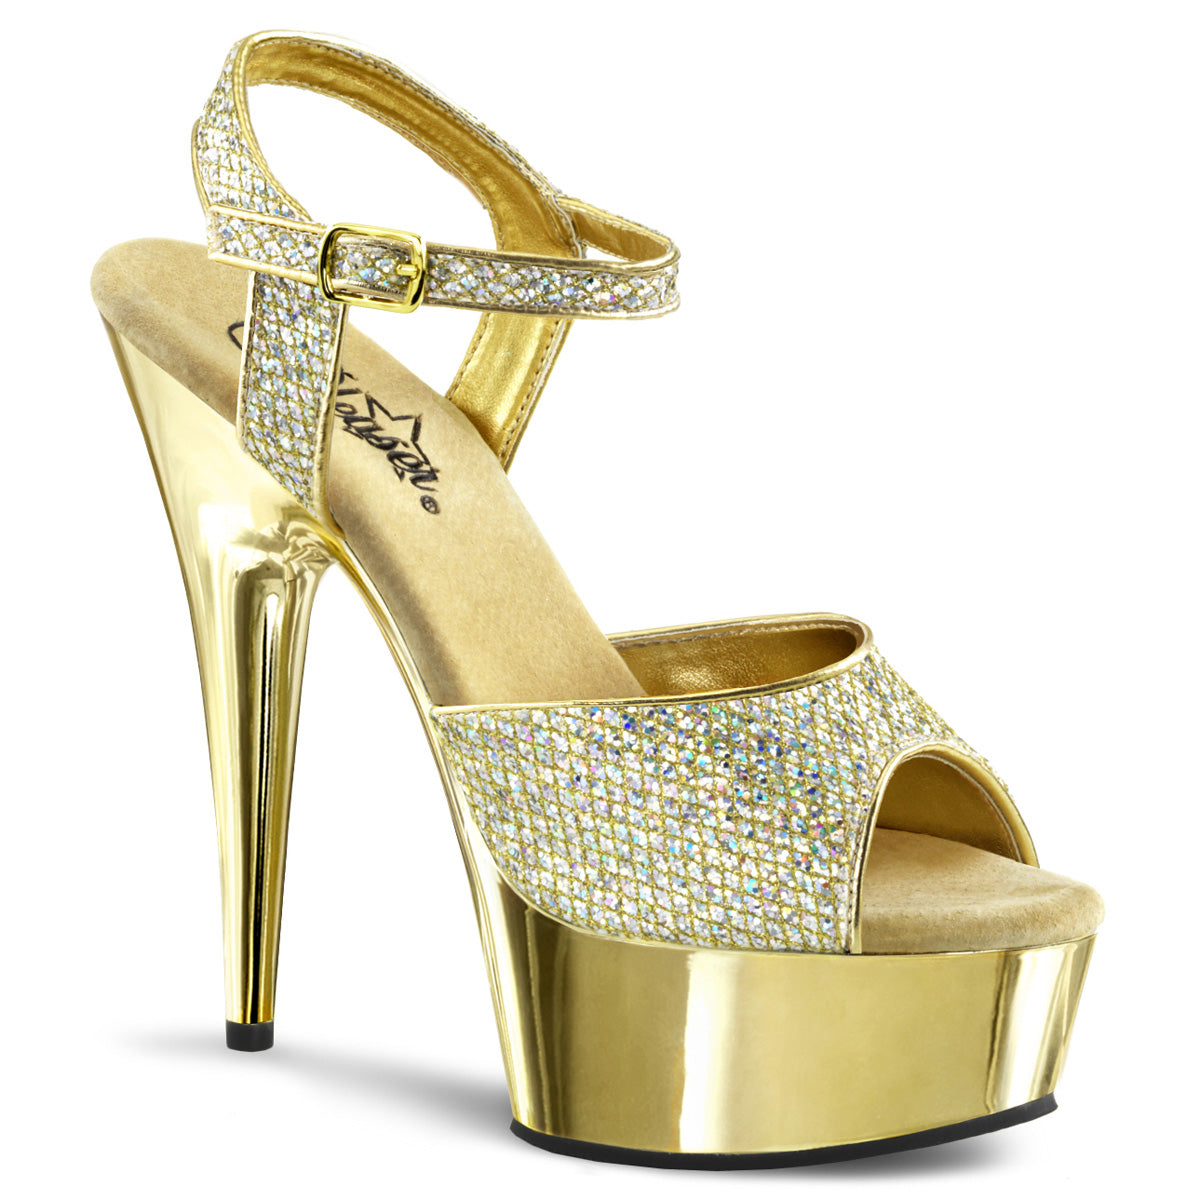 DELIGHT-609G Gold Multi Glitter Sandals